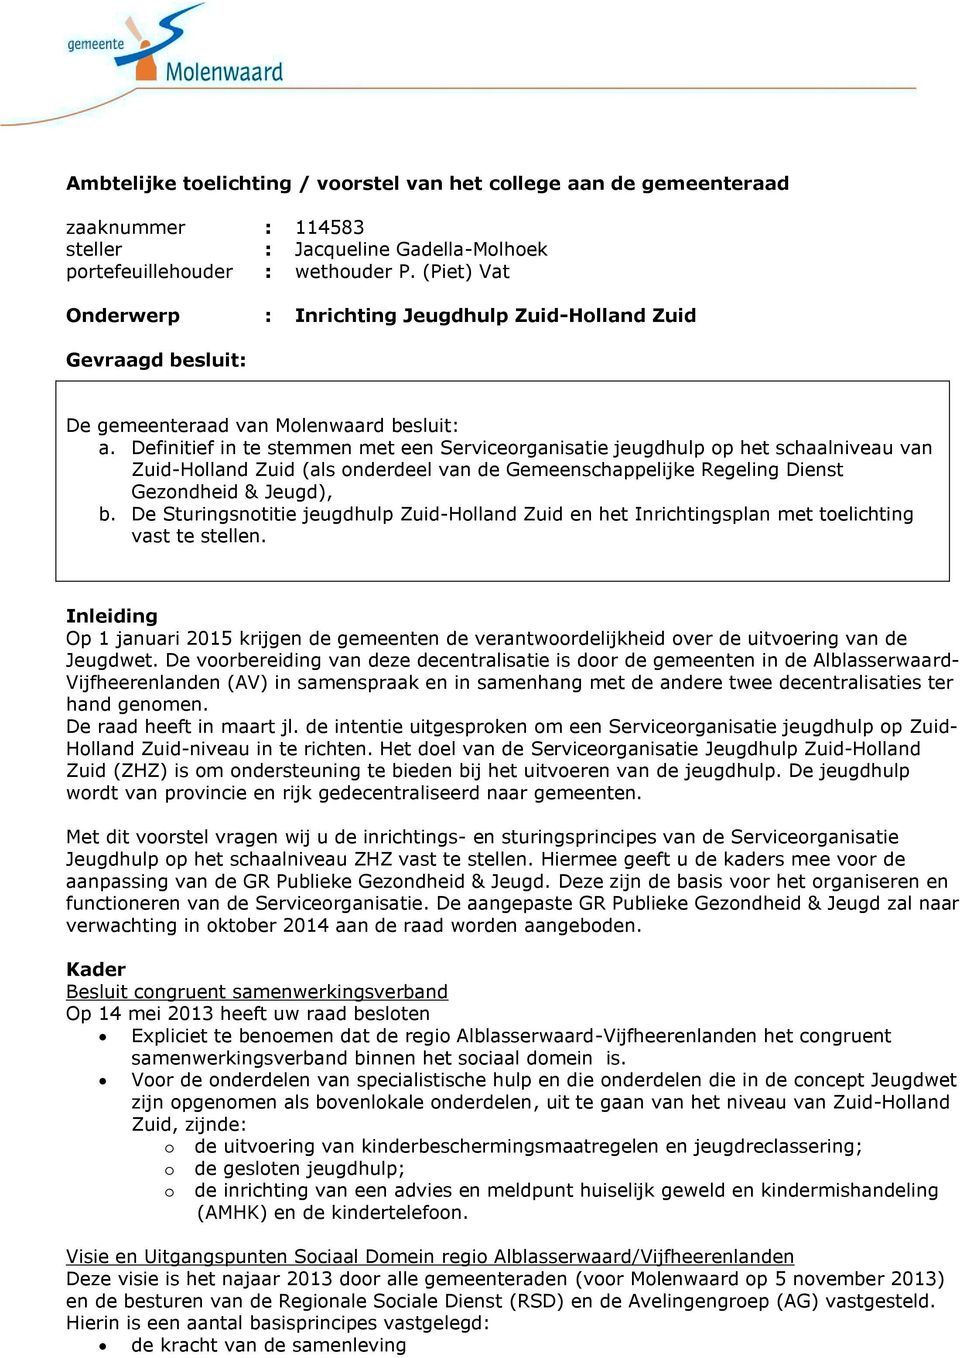 Definitief in te stemmen met een Serviceorganisatie jeugdhulp op het schaalniveau van Zuid-Holland Zuid (als onderdeel van de Gemeenschappelijke Regeling Dienst Gezondheid & Jeugd), b.